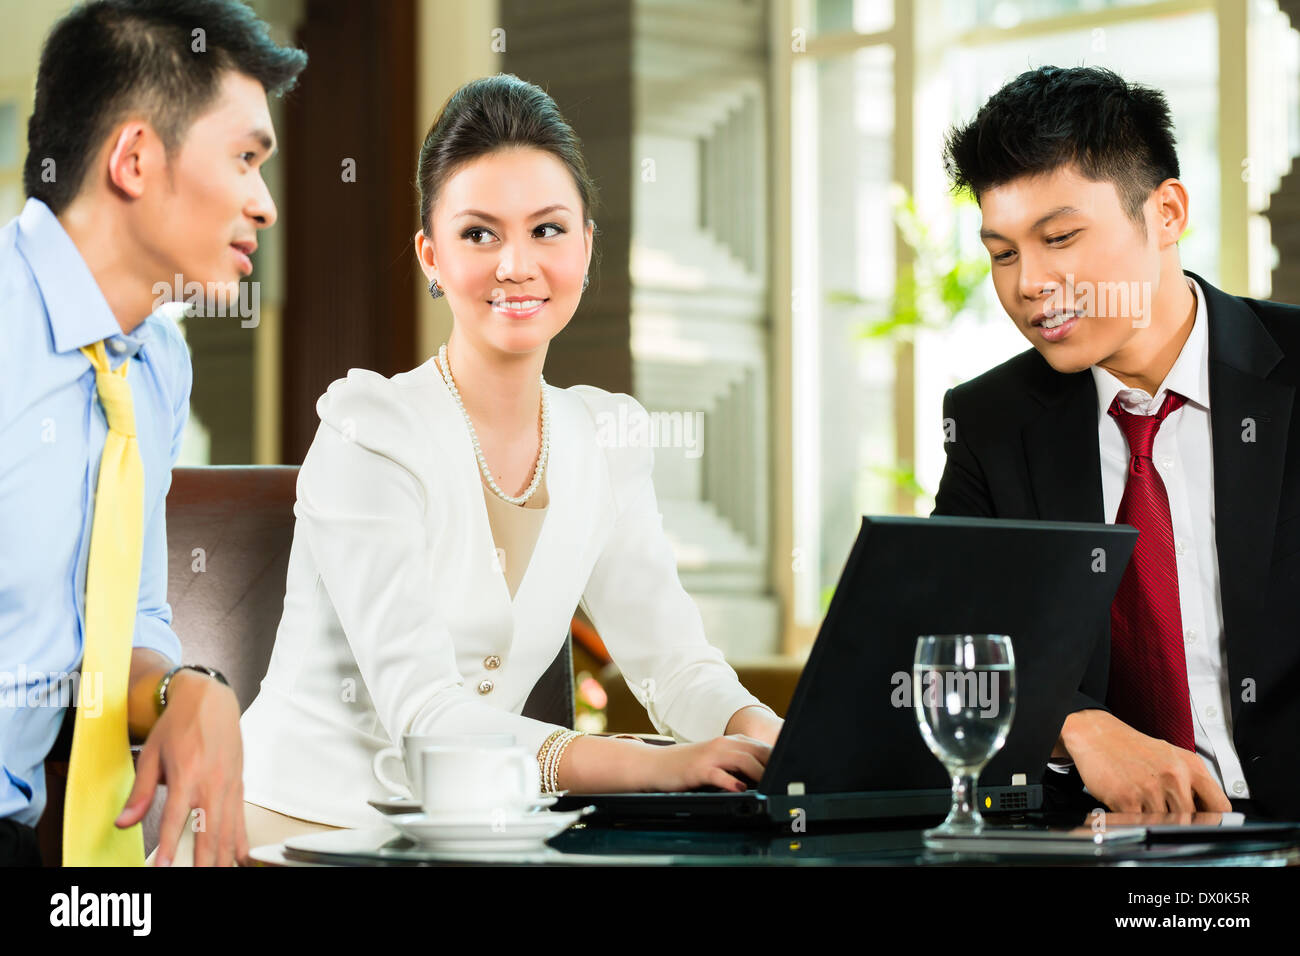 Drei asiatische chinesische Büro Menschen oder Geschäftsleute und Geschäftsfrau, die ein Geschäftstreffen in einer Hotellobby Dokument diskutieren Stockfoto